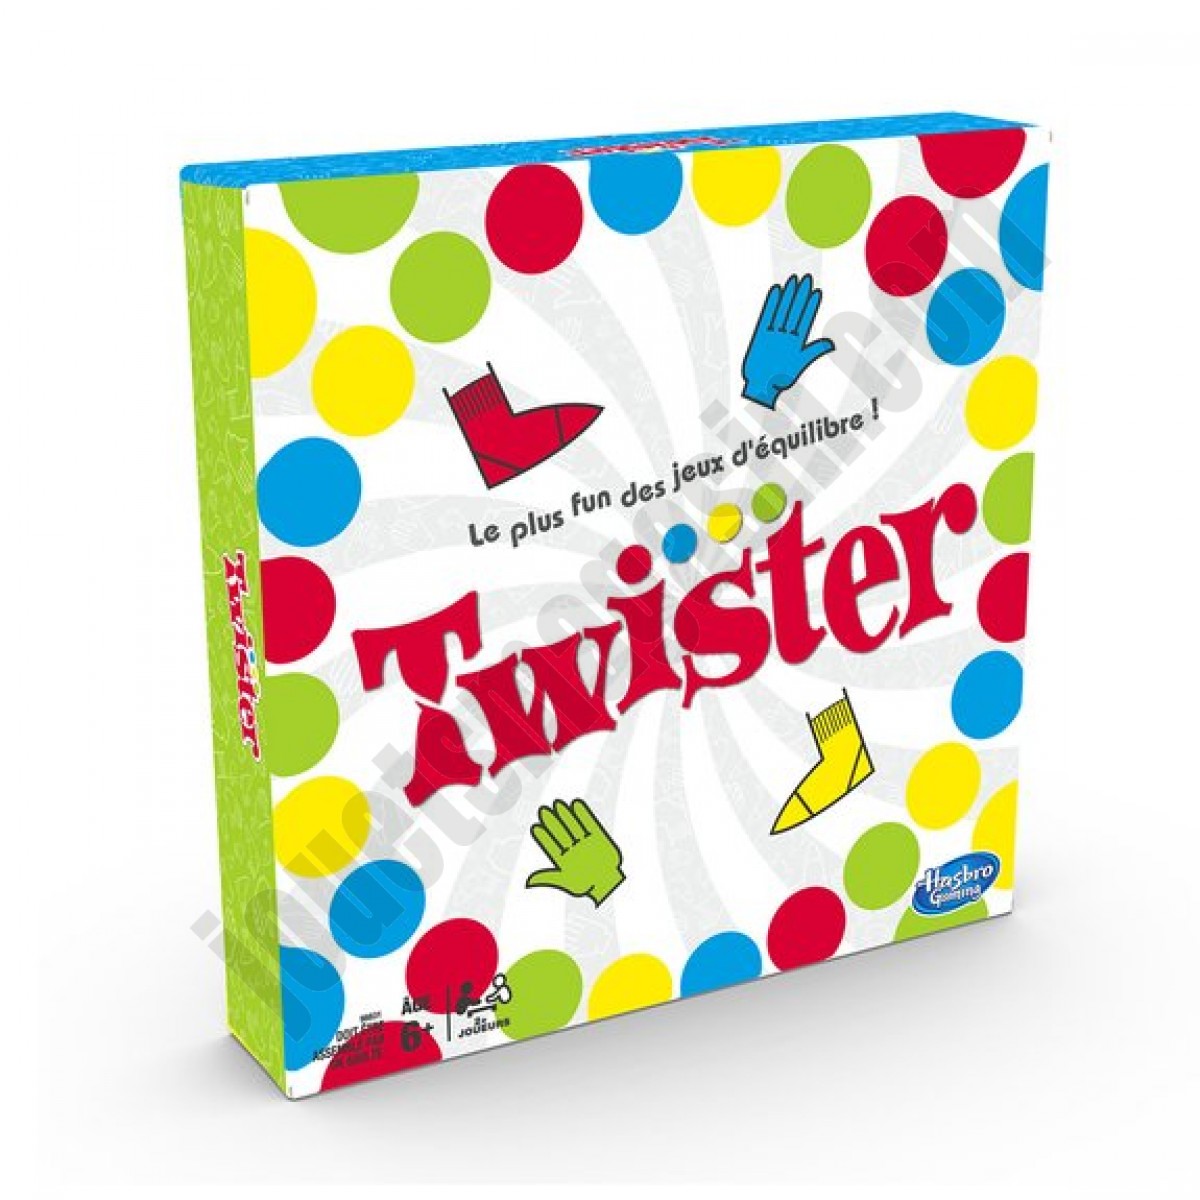 Twister En promotion - Twister En promotion